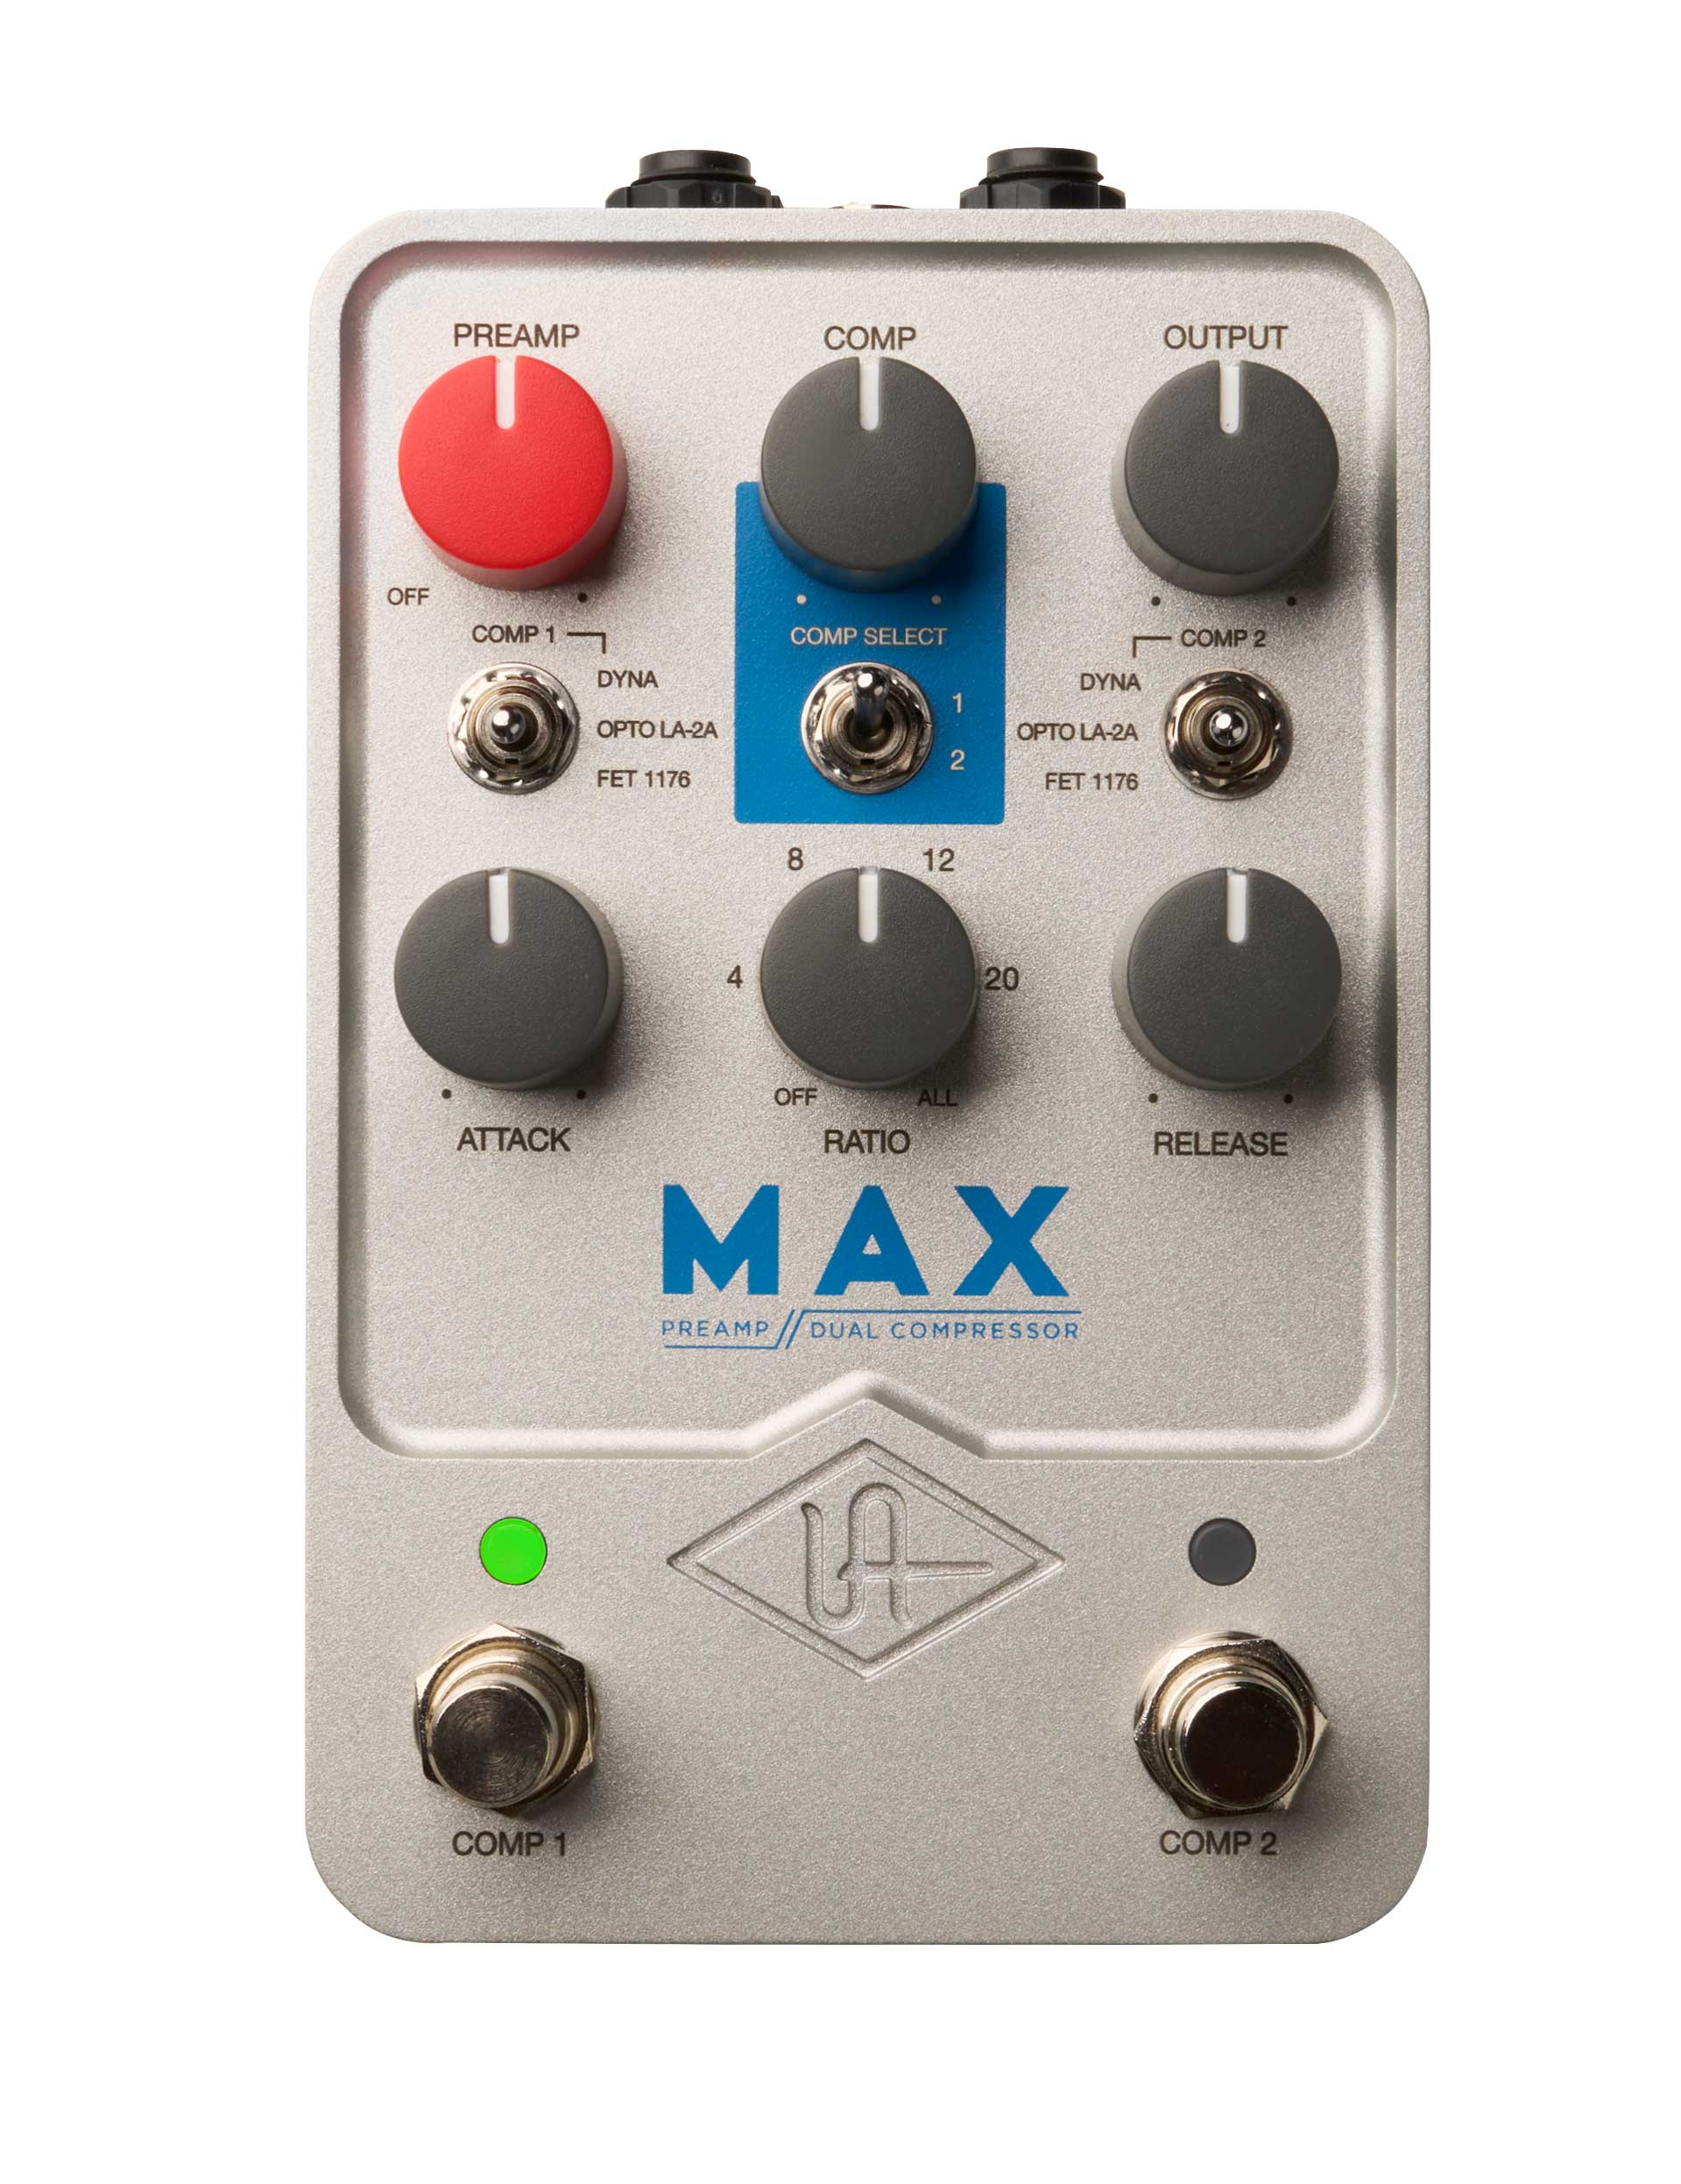 【あす楽対象商品】Universal Audio / UAFX Max Preamp Dual Compressor ユニヴァーサルオーディオ コンプレッサー【新品特価】【PNG】